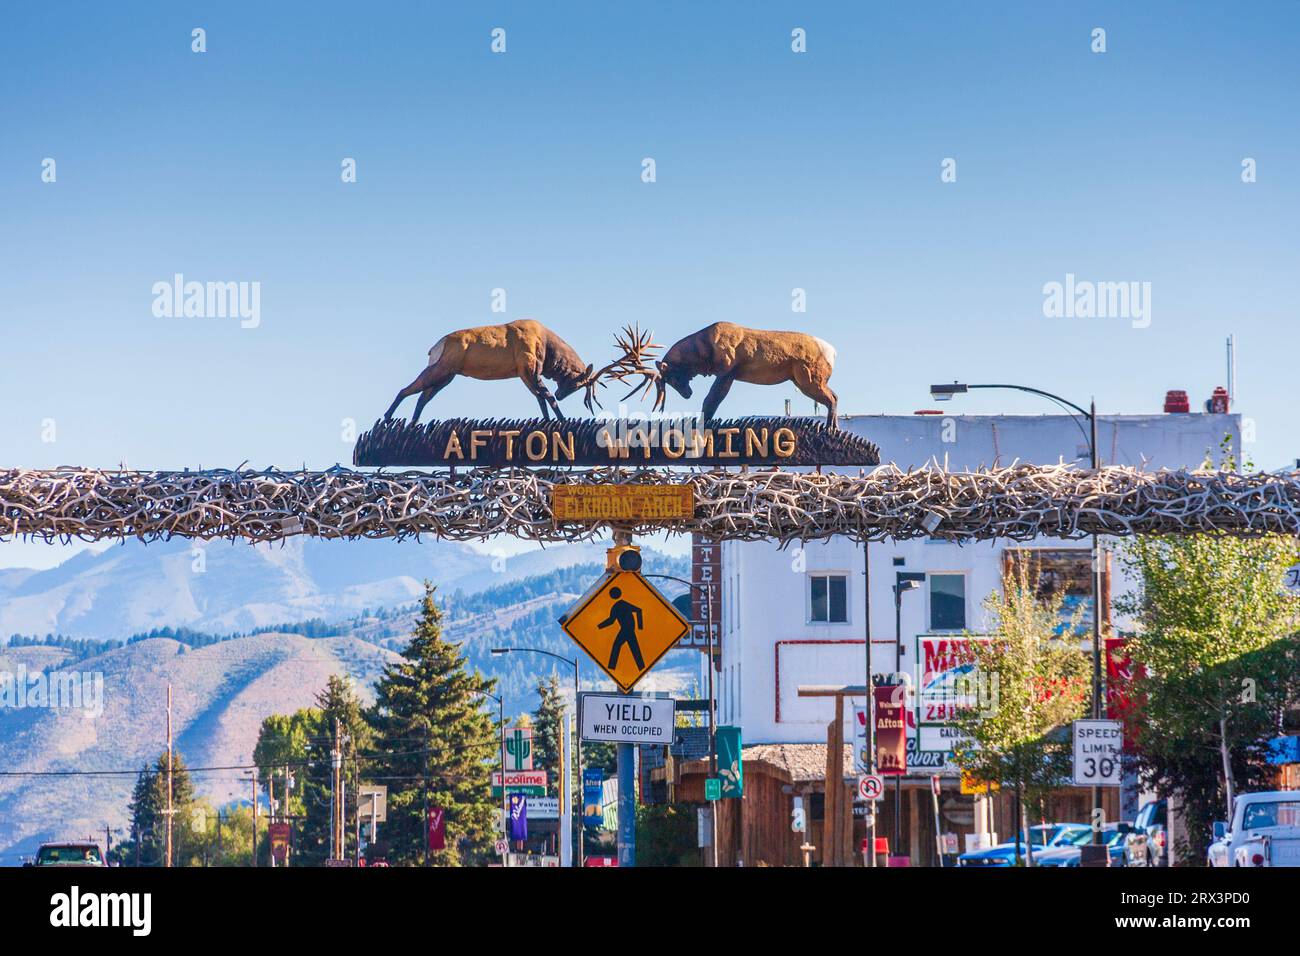 Bienvenido a Afton, Wyoming, signo en la parte superior del arco hecho de cuernos de alce. Foto de stock